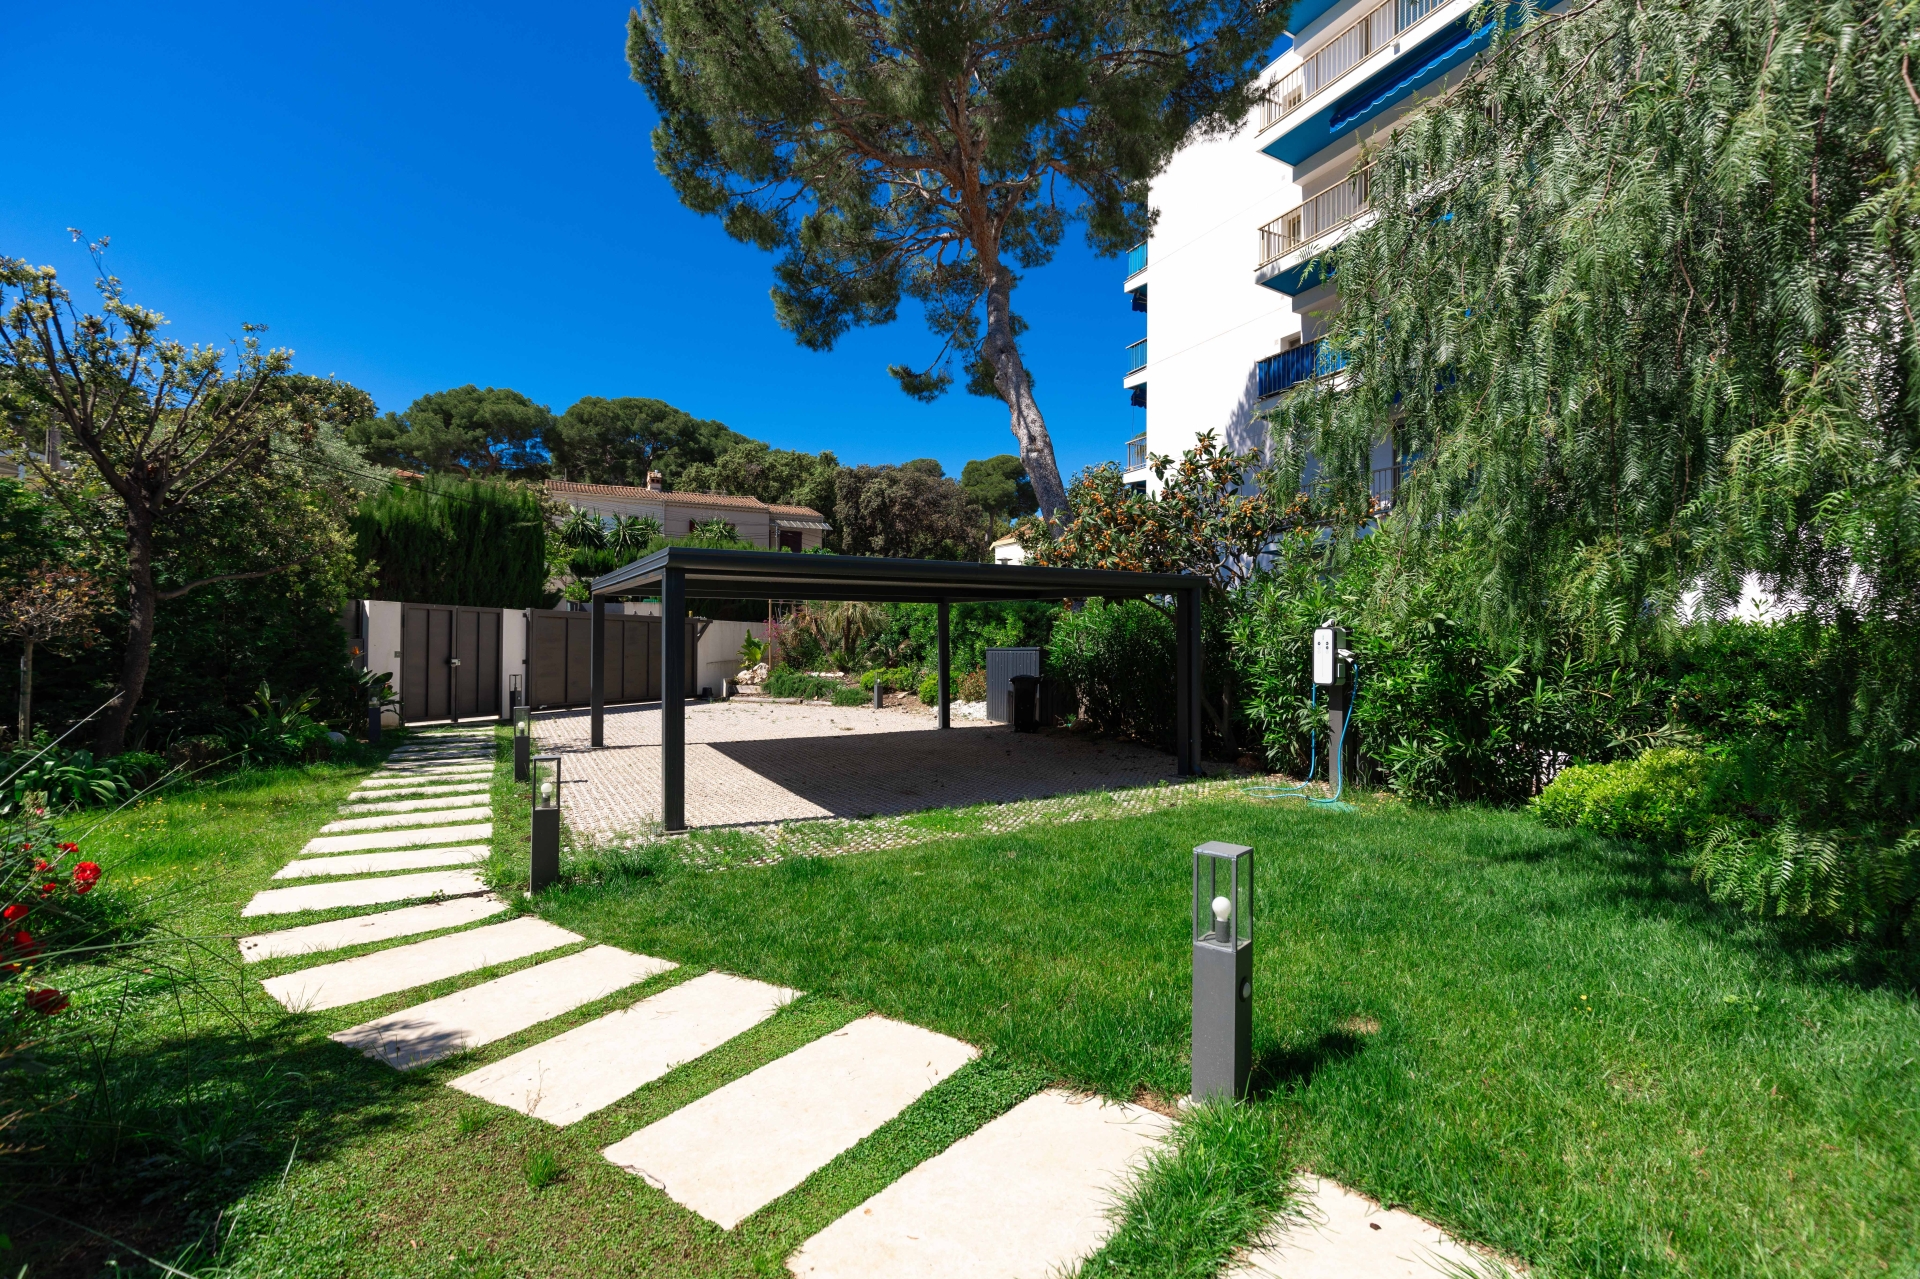 Dotta Villa a vendre - VILLA STECYA - Roquebrune-Cap-Martin - Roquebrune-Cap-Martin - img074a5183